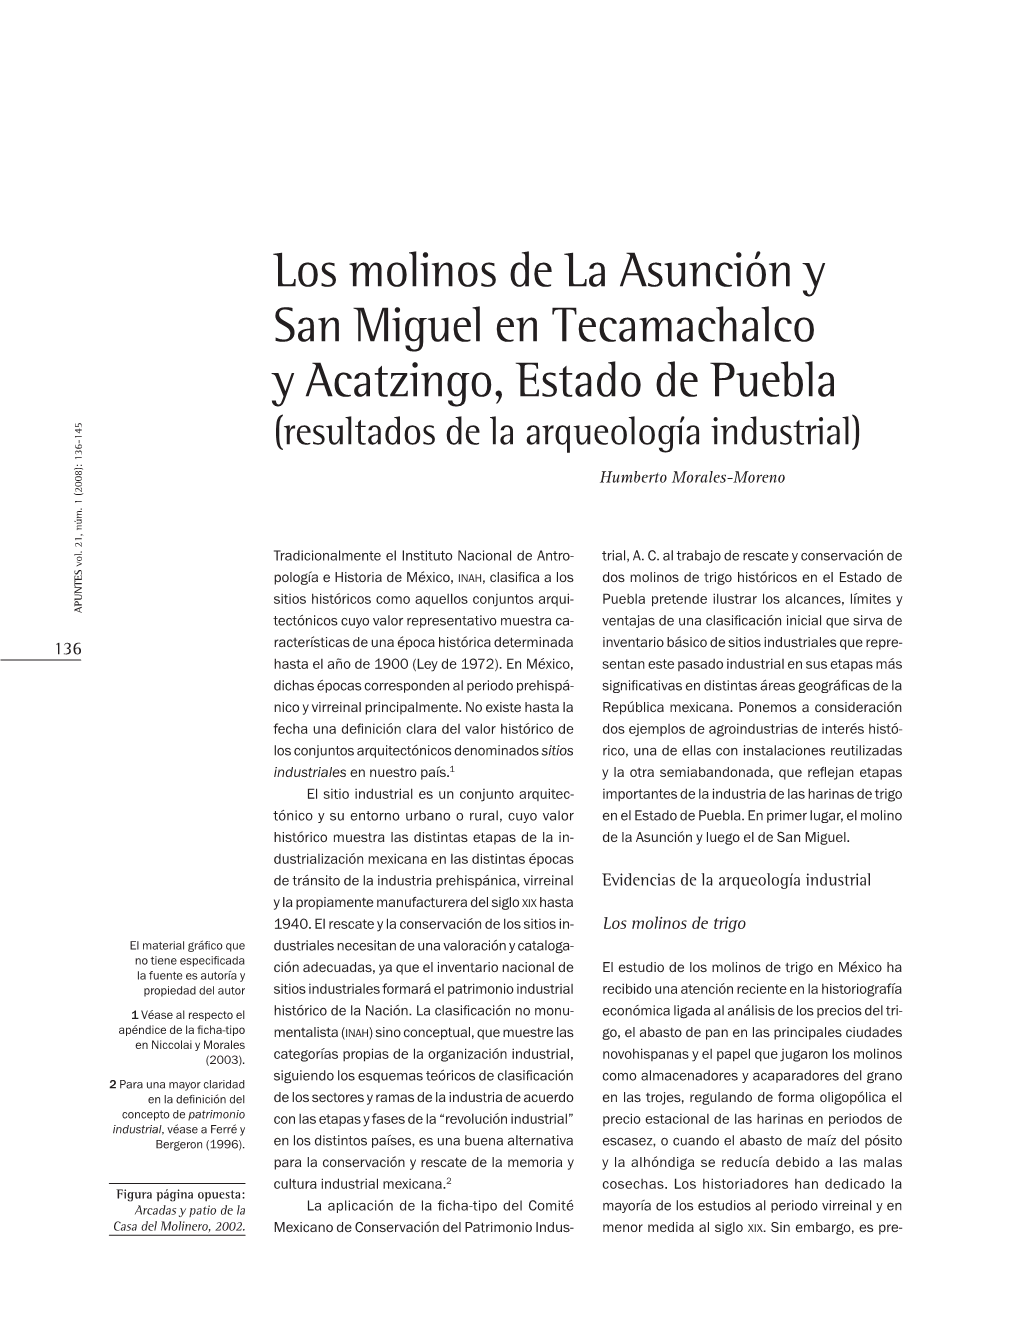 Los Molinos De La Asunción Y San Miguel En Tecamachalco Y Acatzingo, Estado De Puebla (Resultados De La Arqueología Industrial)